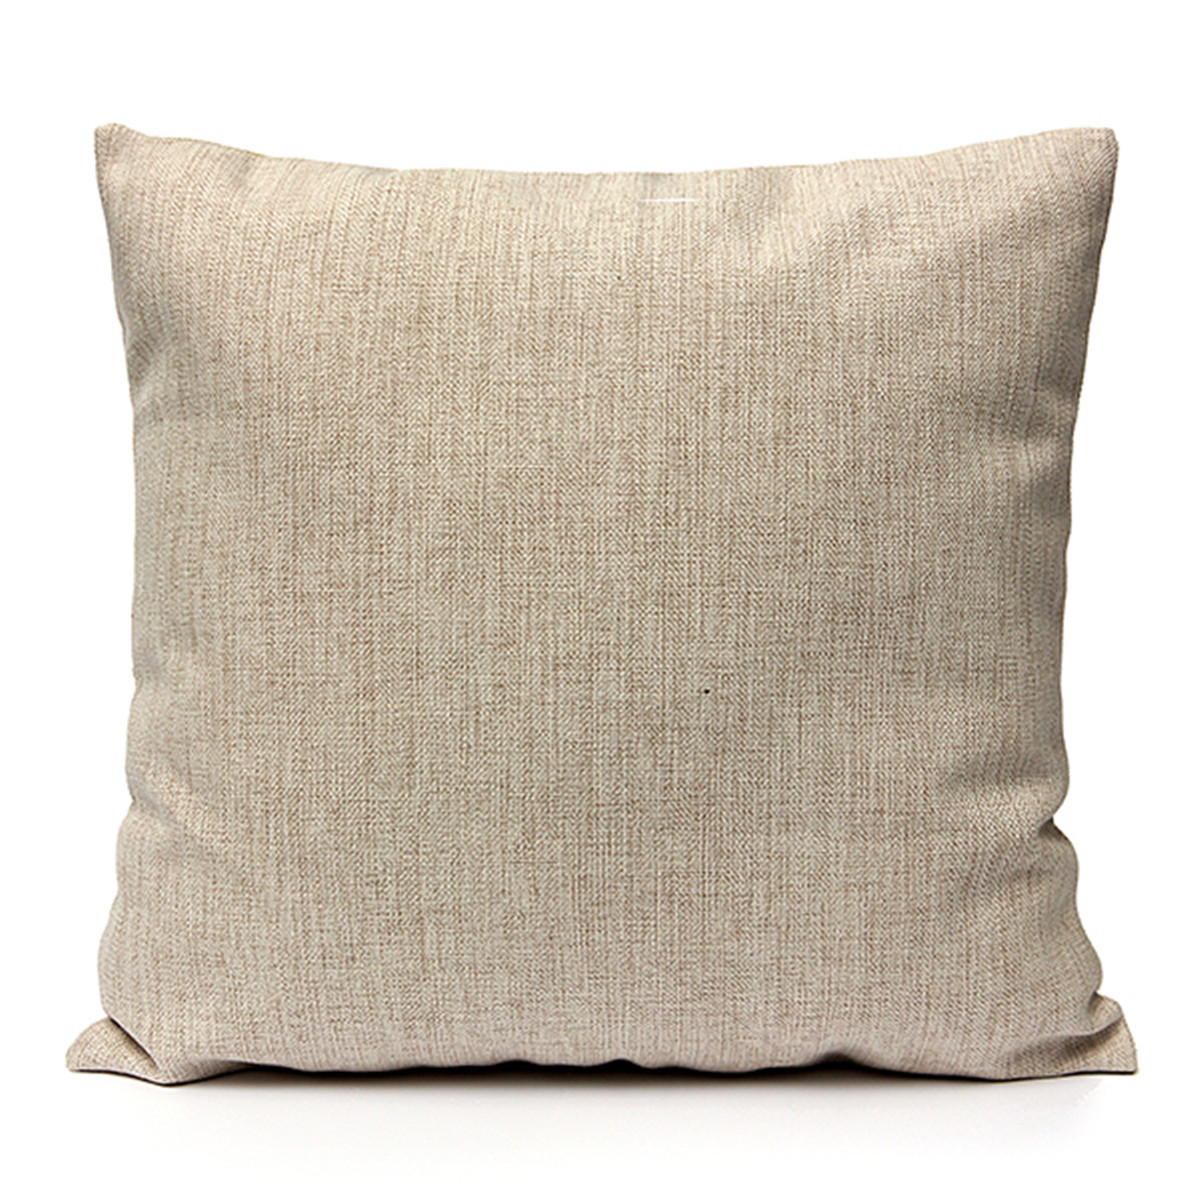 Nordic-style-Decorative-Pillow-Case-Linen-Cotton-Cushion-Cover-Home-Textile-951197-8